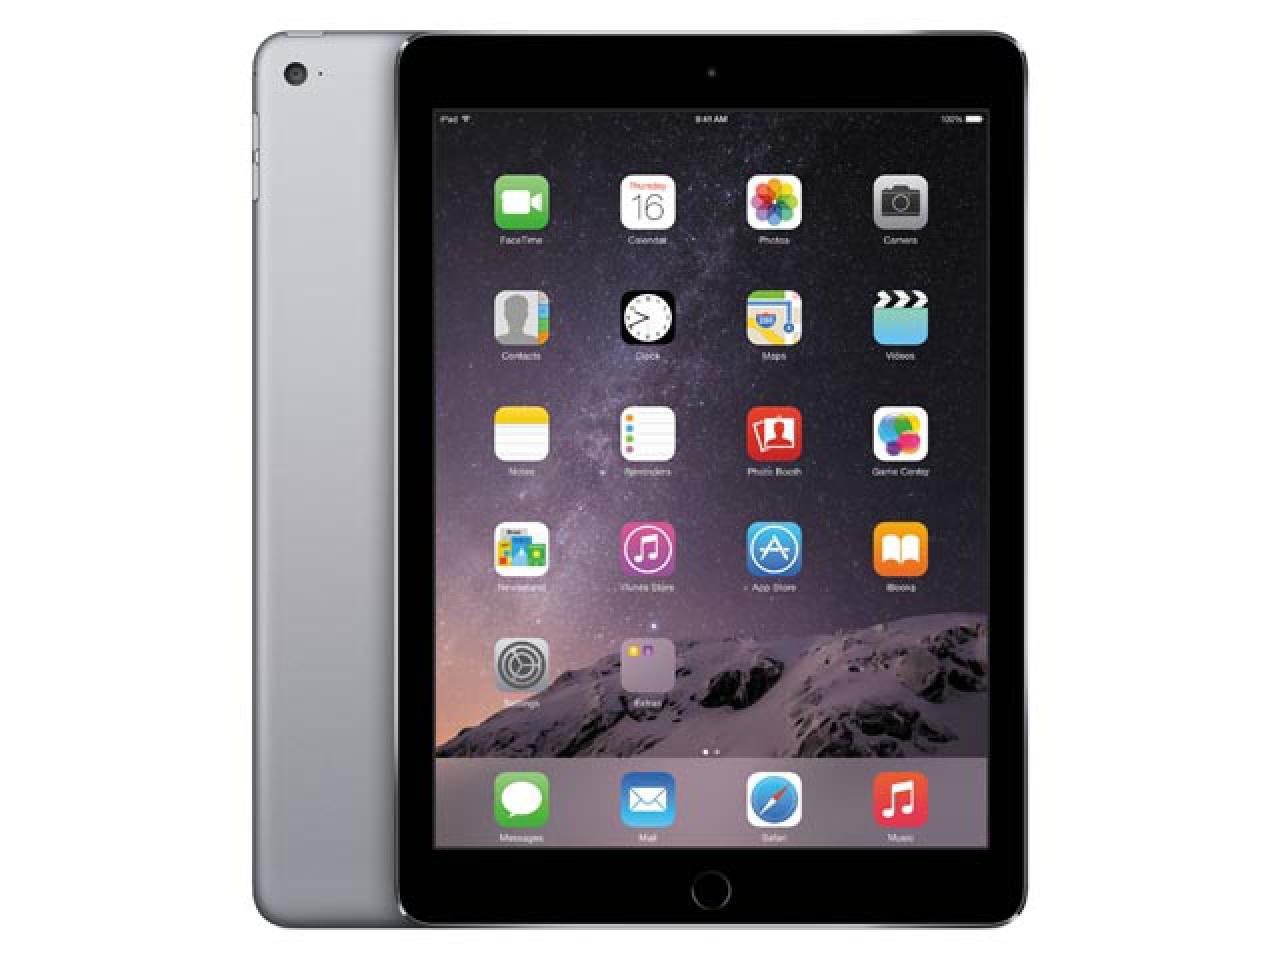 Apple iPad Air 2 A1566 Spacegrau  - shop.bb-net.de